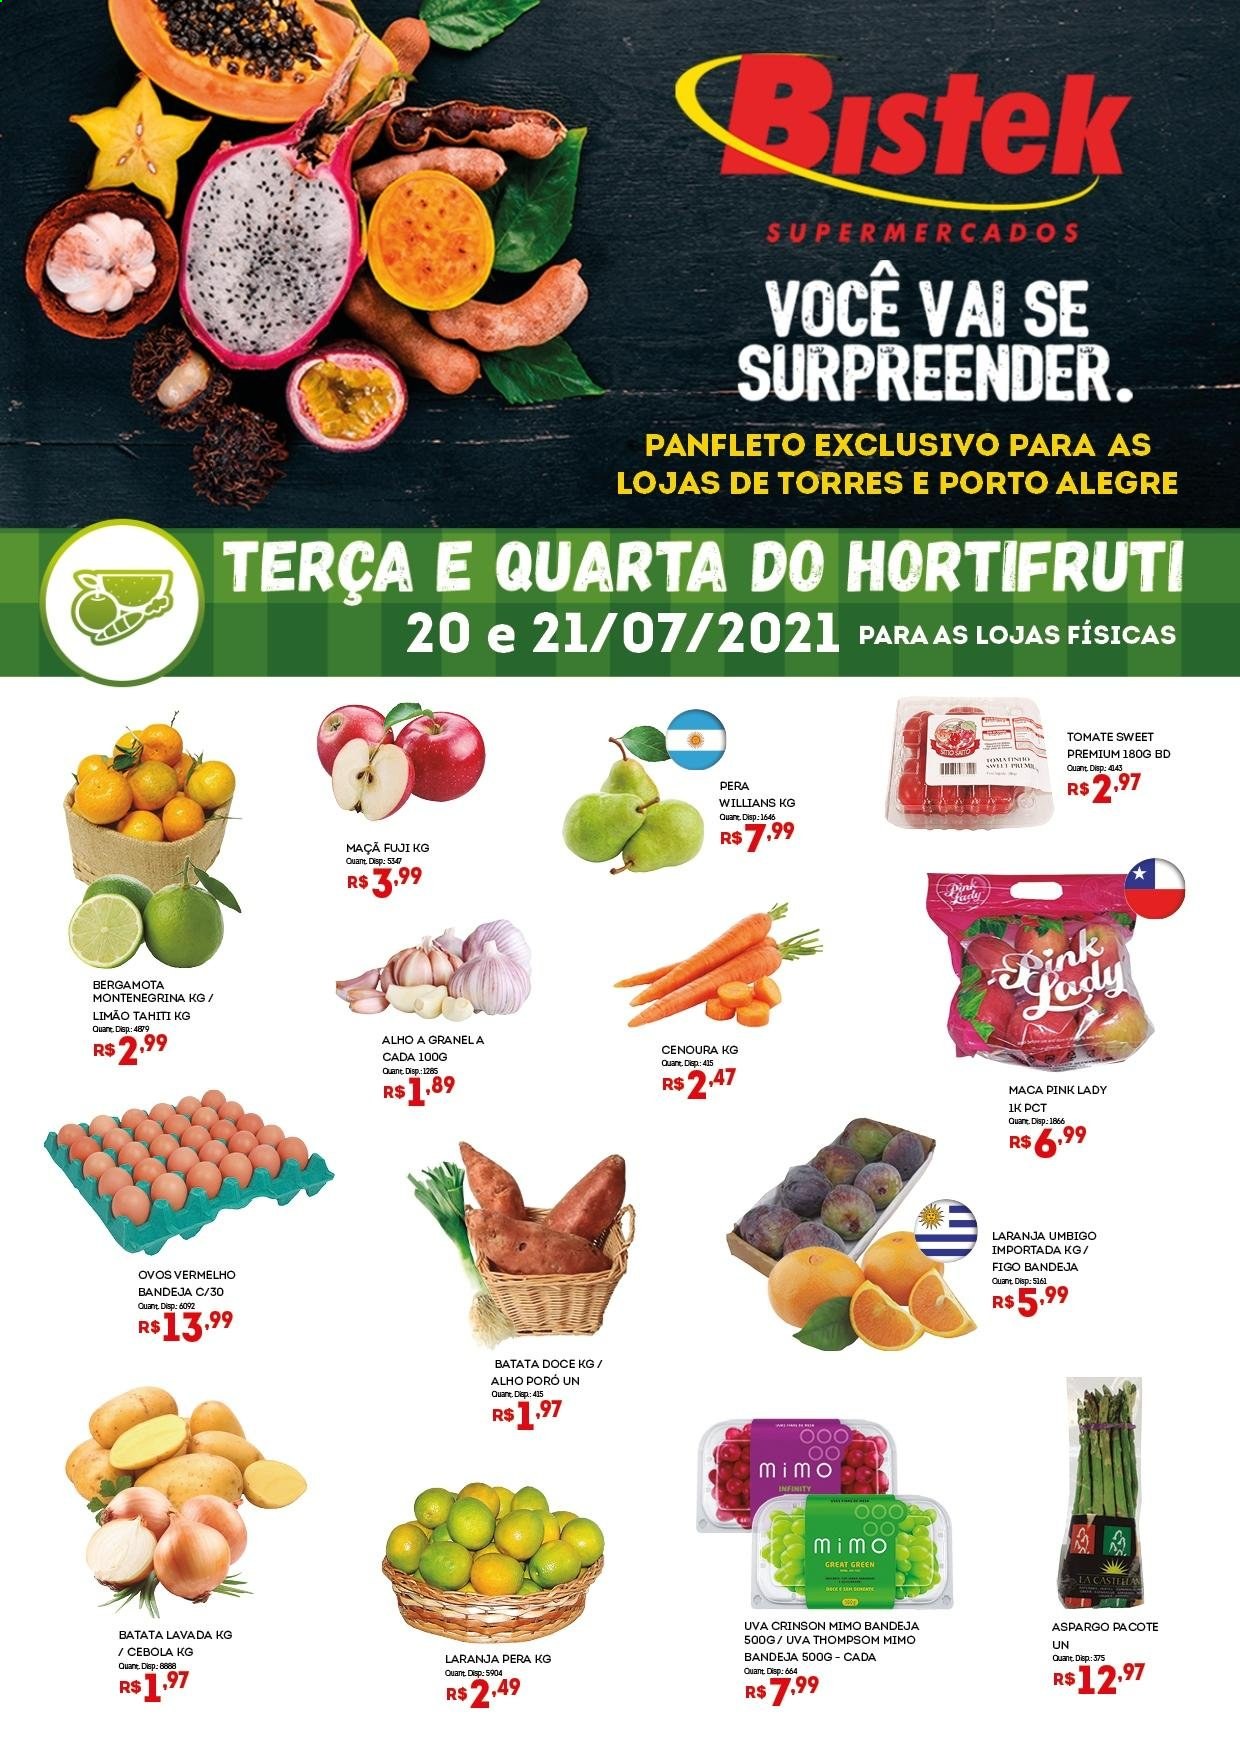 thumbnail - Folheto Bistek Supermercados - 20/07/2021 - 22/07/2021 - Produtos em promoção - maçã, pera, laranja, uva, limão, batata-doce, alho-poró, aspargo, espargos, ovos. Página 1.